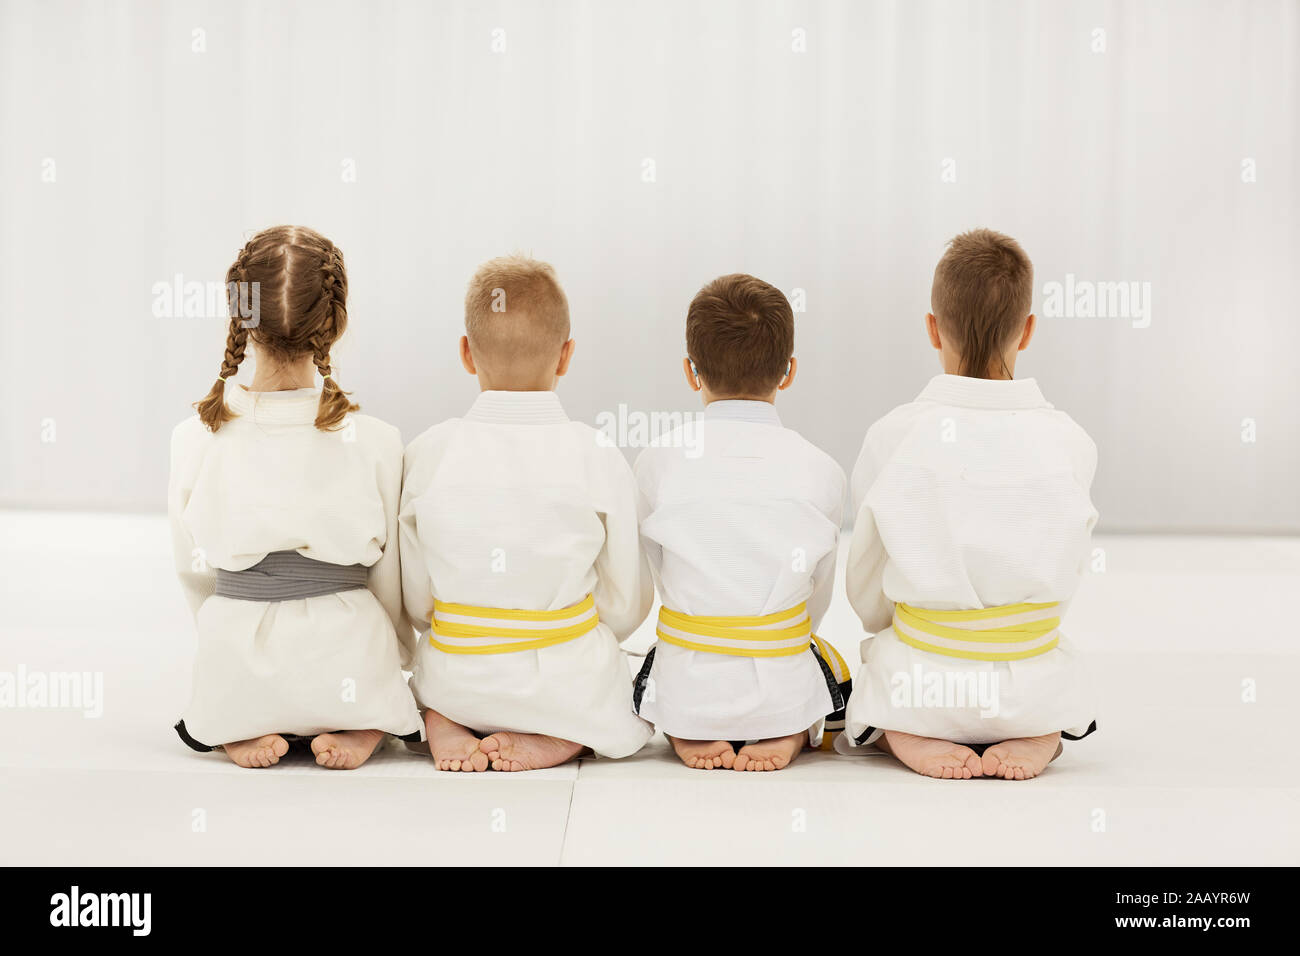 Vue arrière d'enfants pieds nus en kimono blanc assis sur le plancher ensemble dans une rangée Banque D'Images